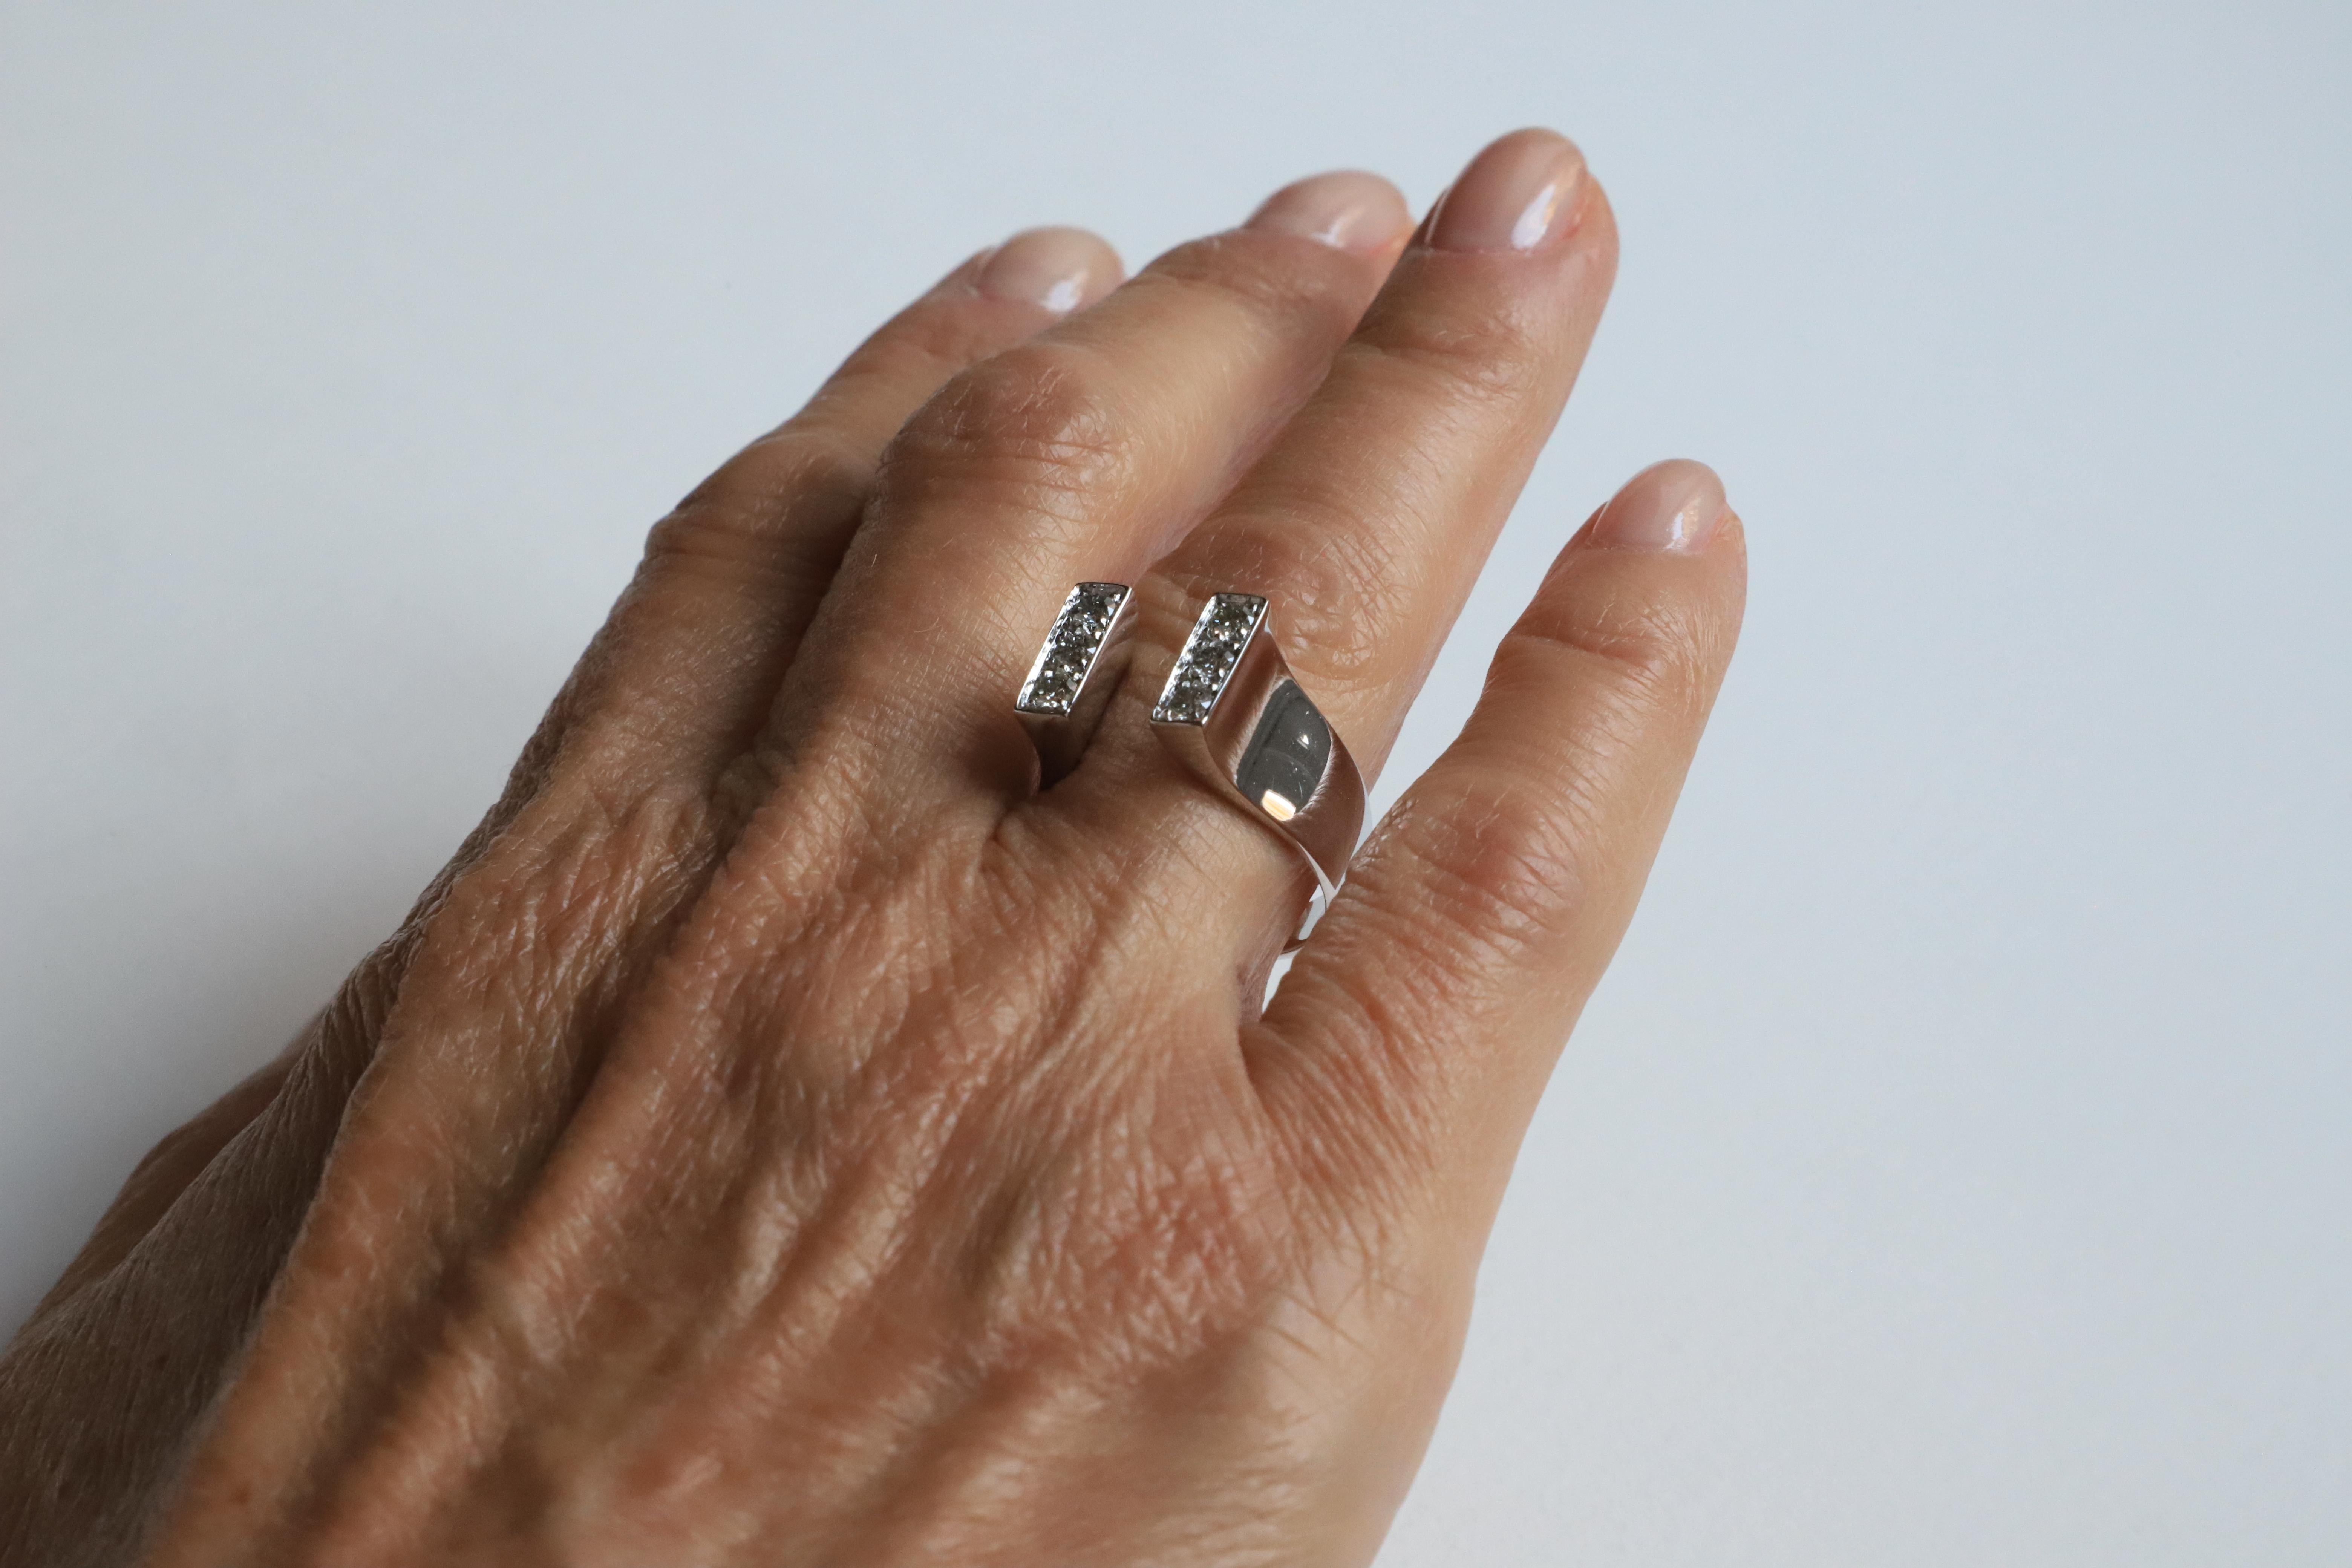 Platin 0,54 Karat Brillantschliff Weiß Diamanten Magnet Verlobungsring Design 
Der Ring Magnet ist handgefertigt aus Platin und leuchtenden weißen Diamanten im Brillantschliff. 
Jede Größe ist auf Bestellung innerhalb von zwei Wochen